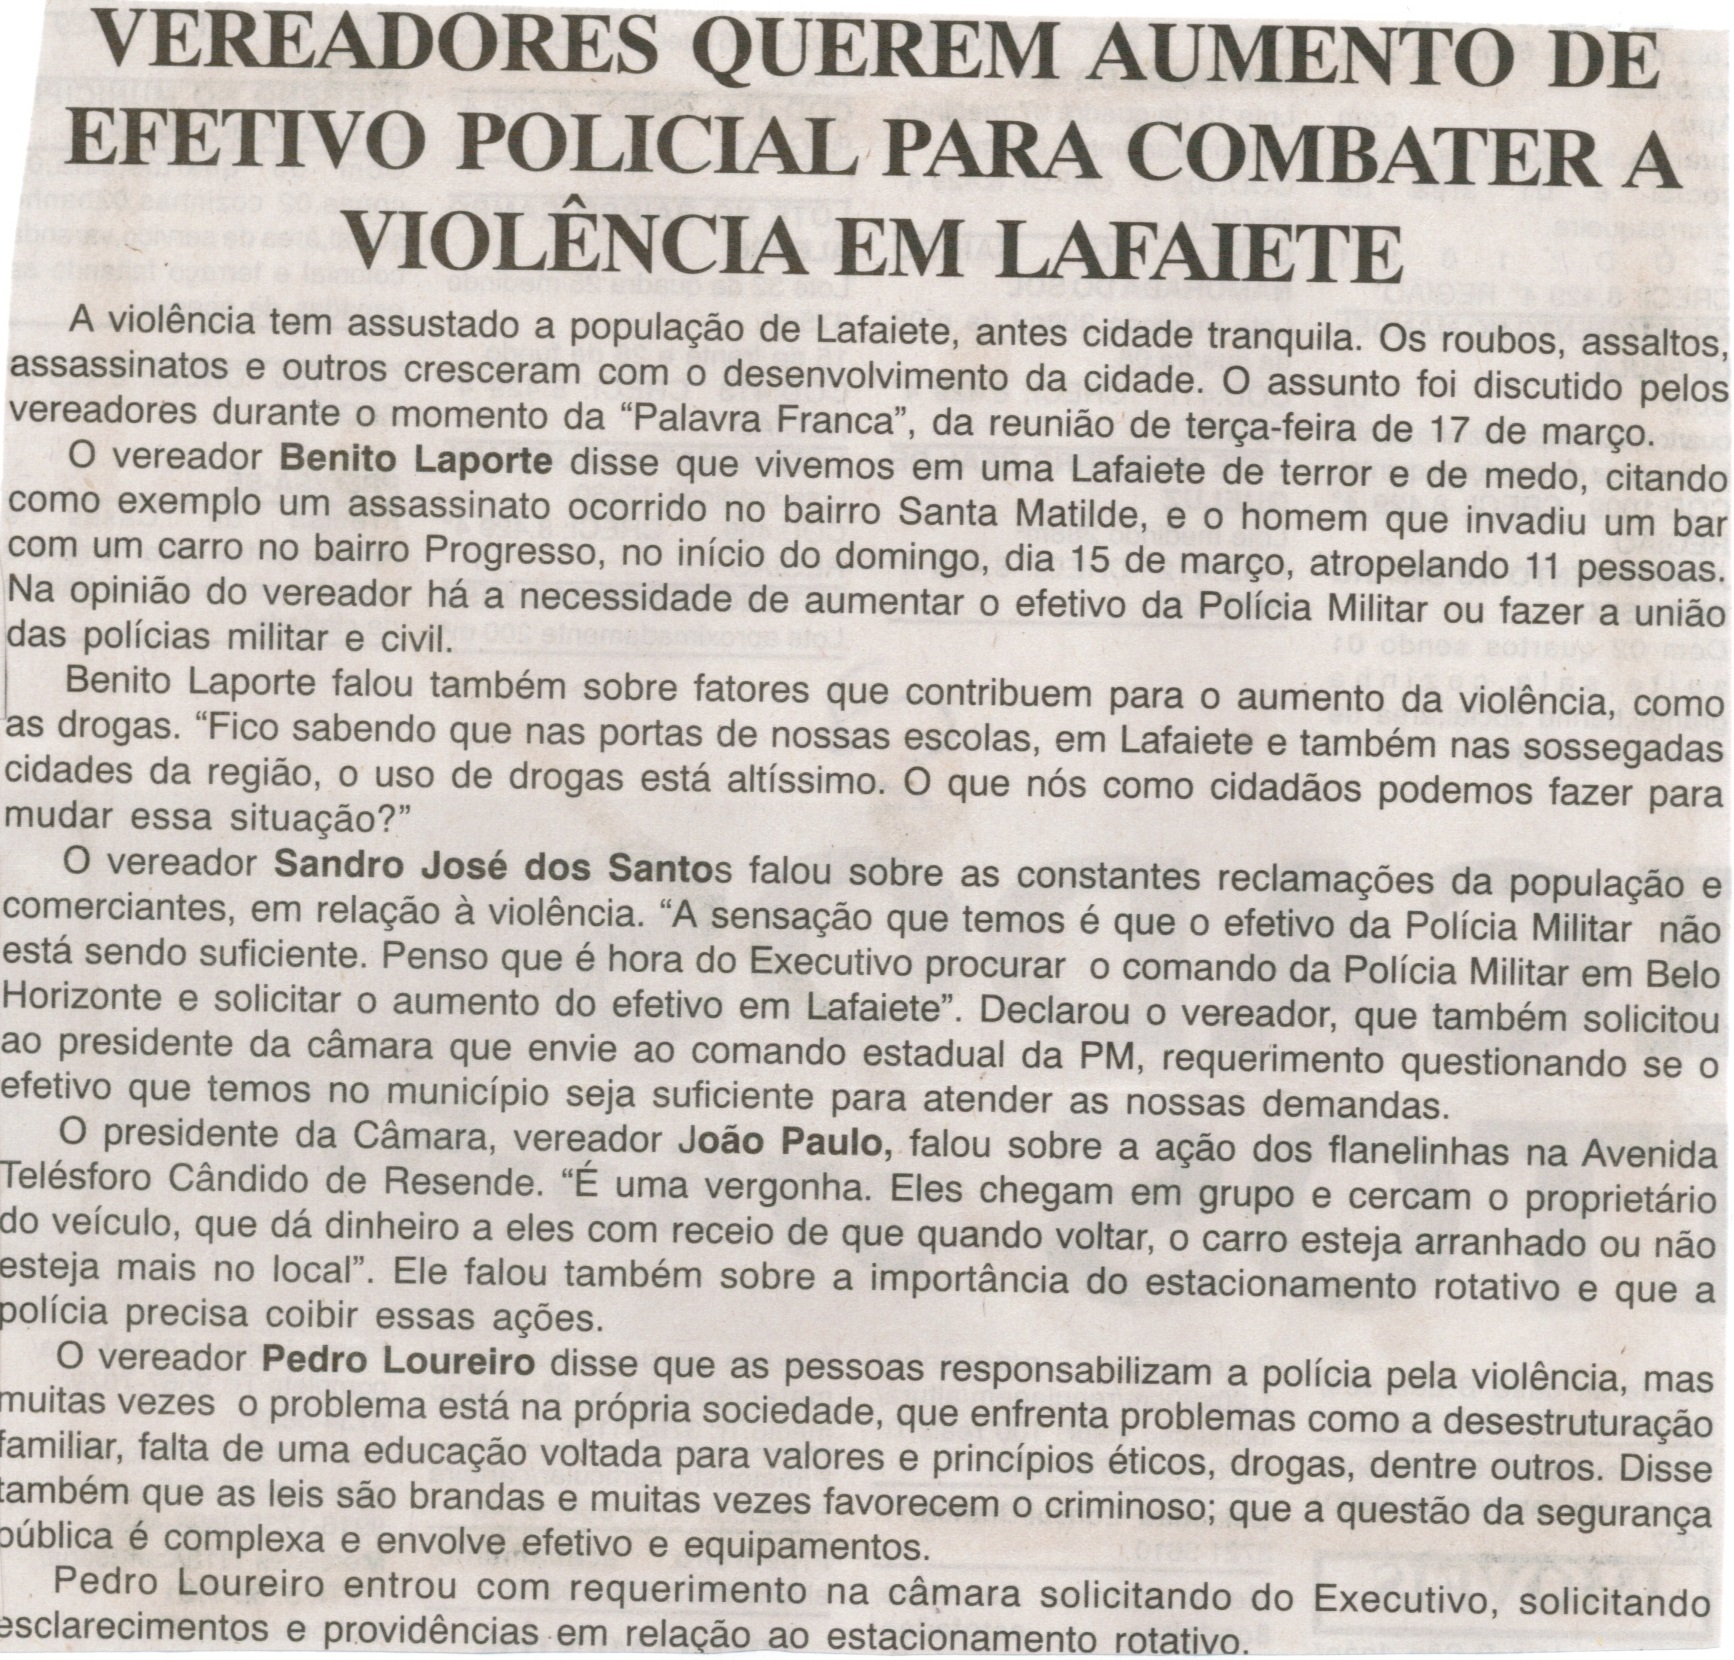 Vereadores querem aumento de efetivo policial para combater a violência em Lafaiete. Jornal Nova Gazeta, Conselheiro Lafaiete, 27 mar. 2015, 834ª ed., p. 12.